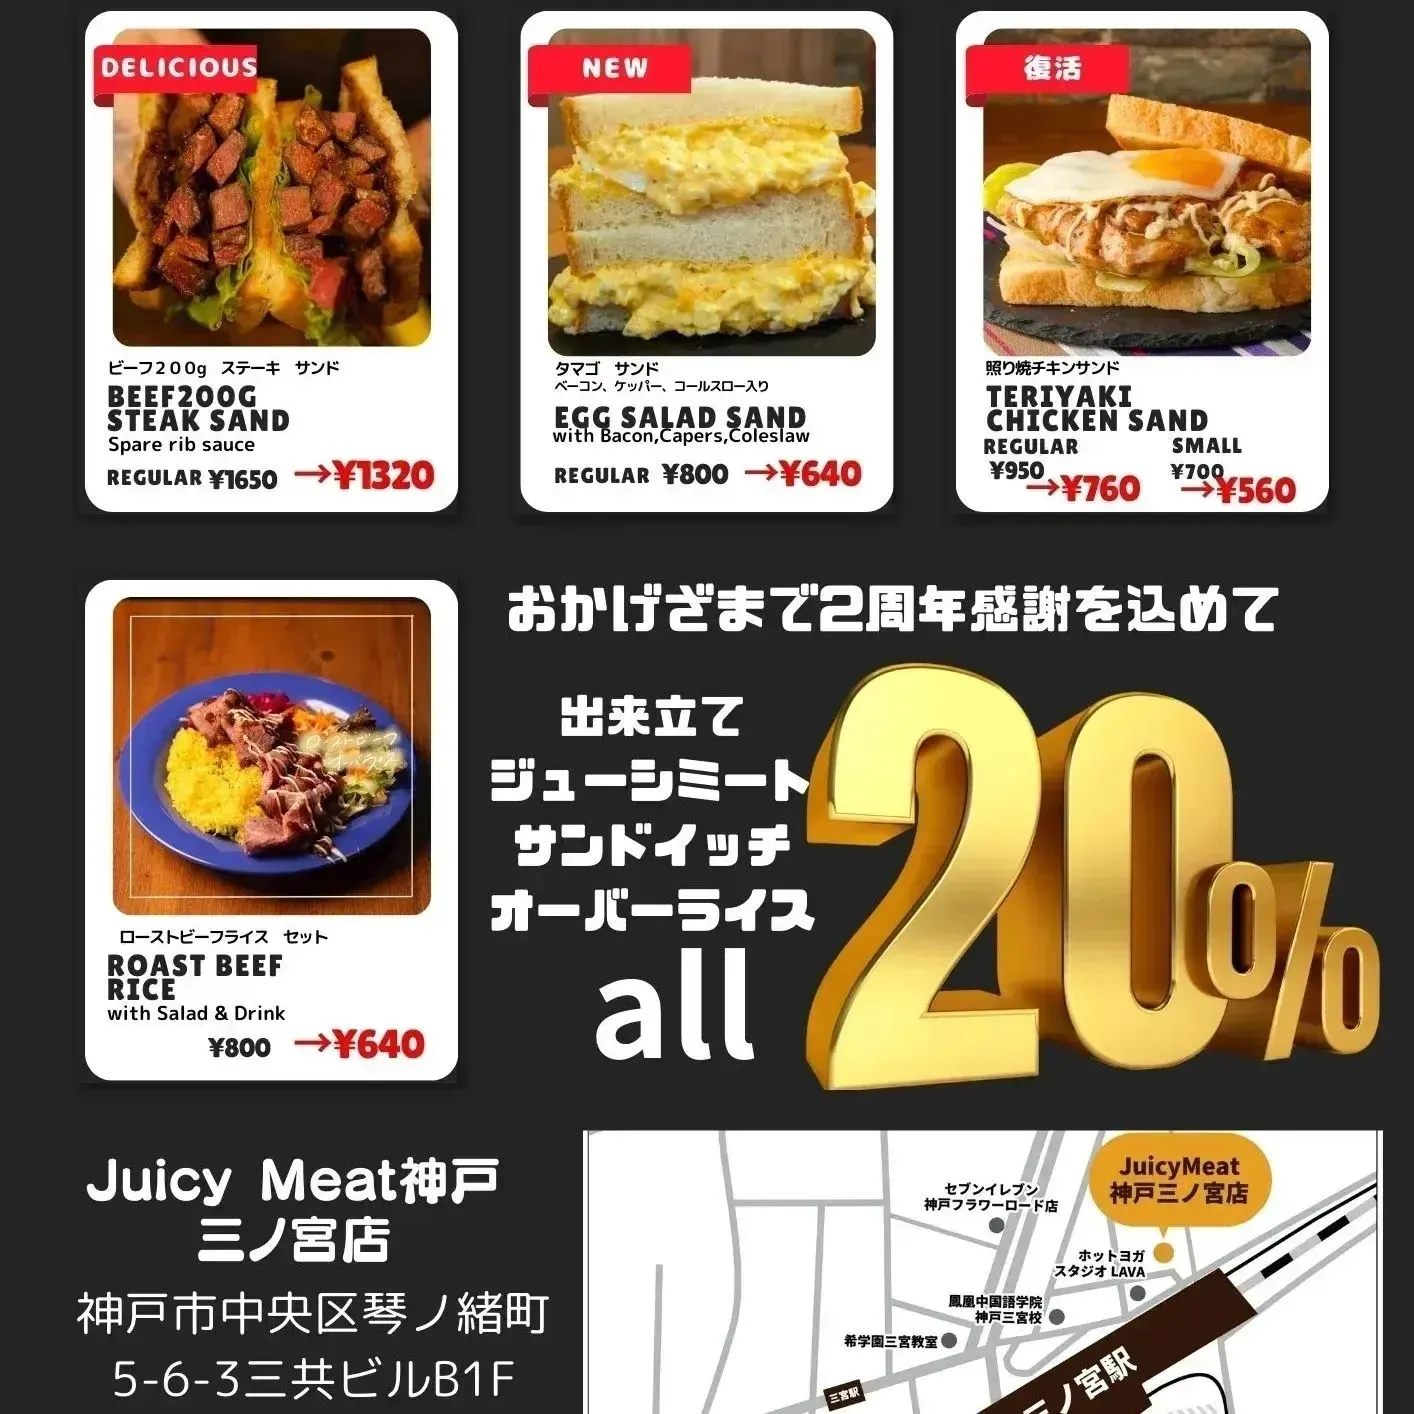 👉オープン2周年記念セール【サンドイッチ全品20%OFF】